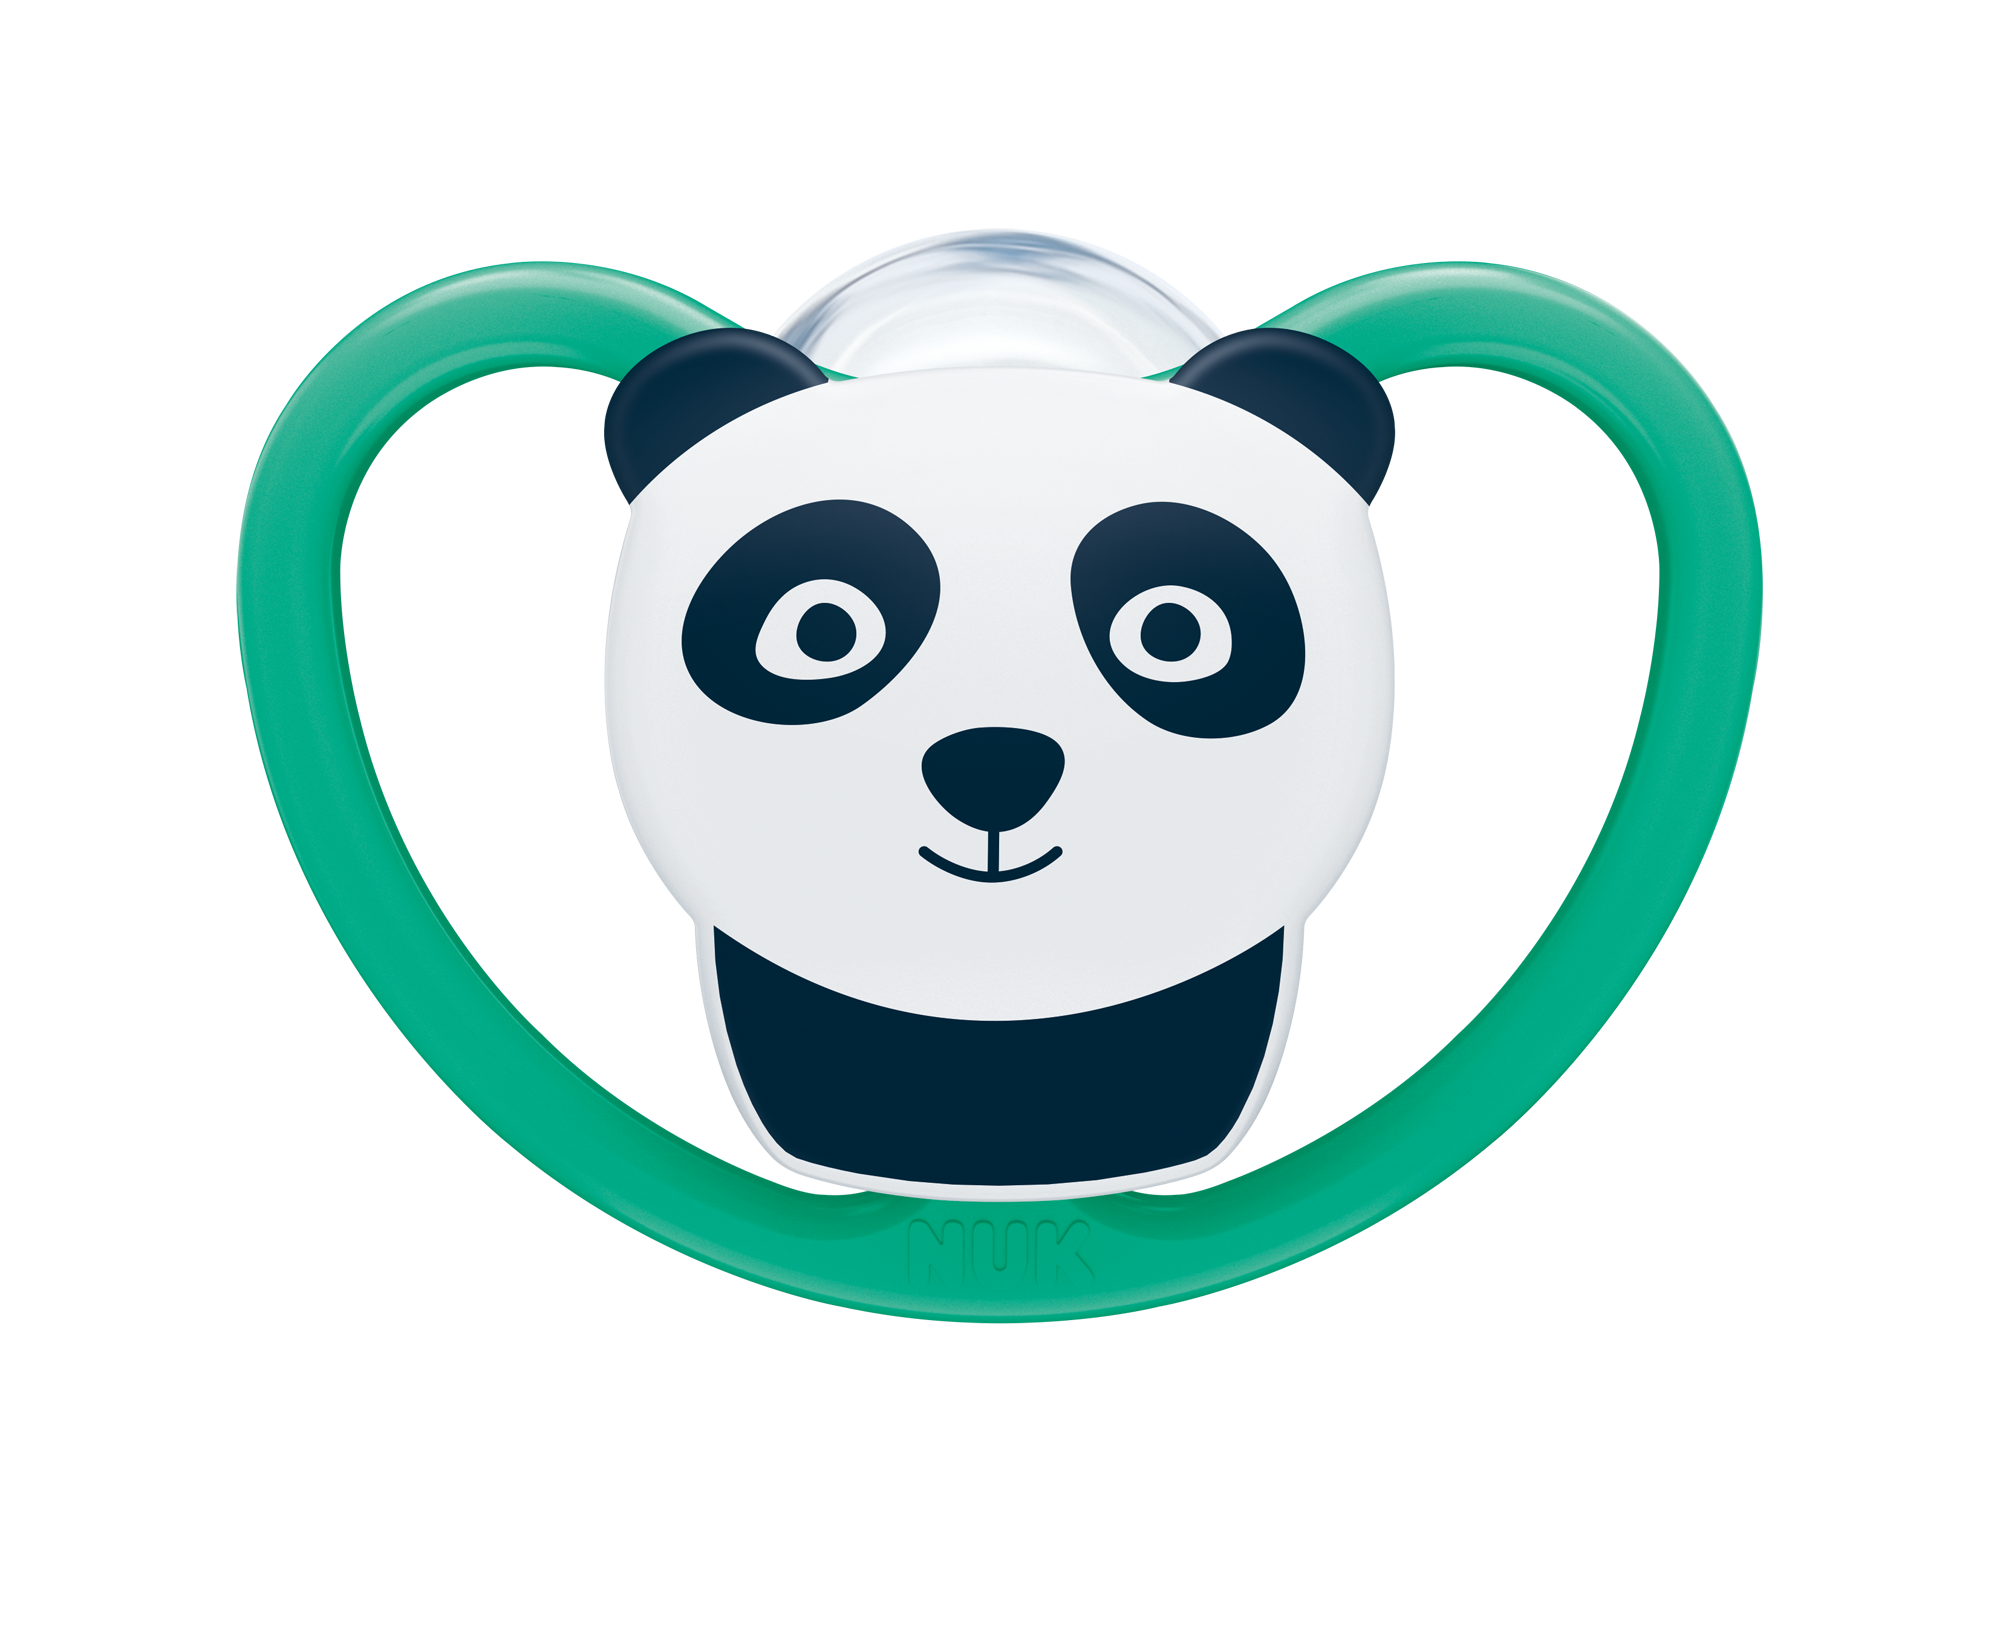 Nuk šdítko Space panda zelená